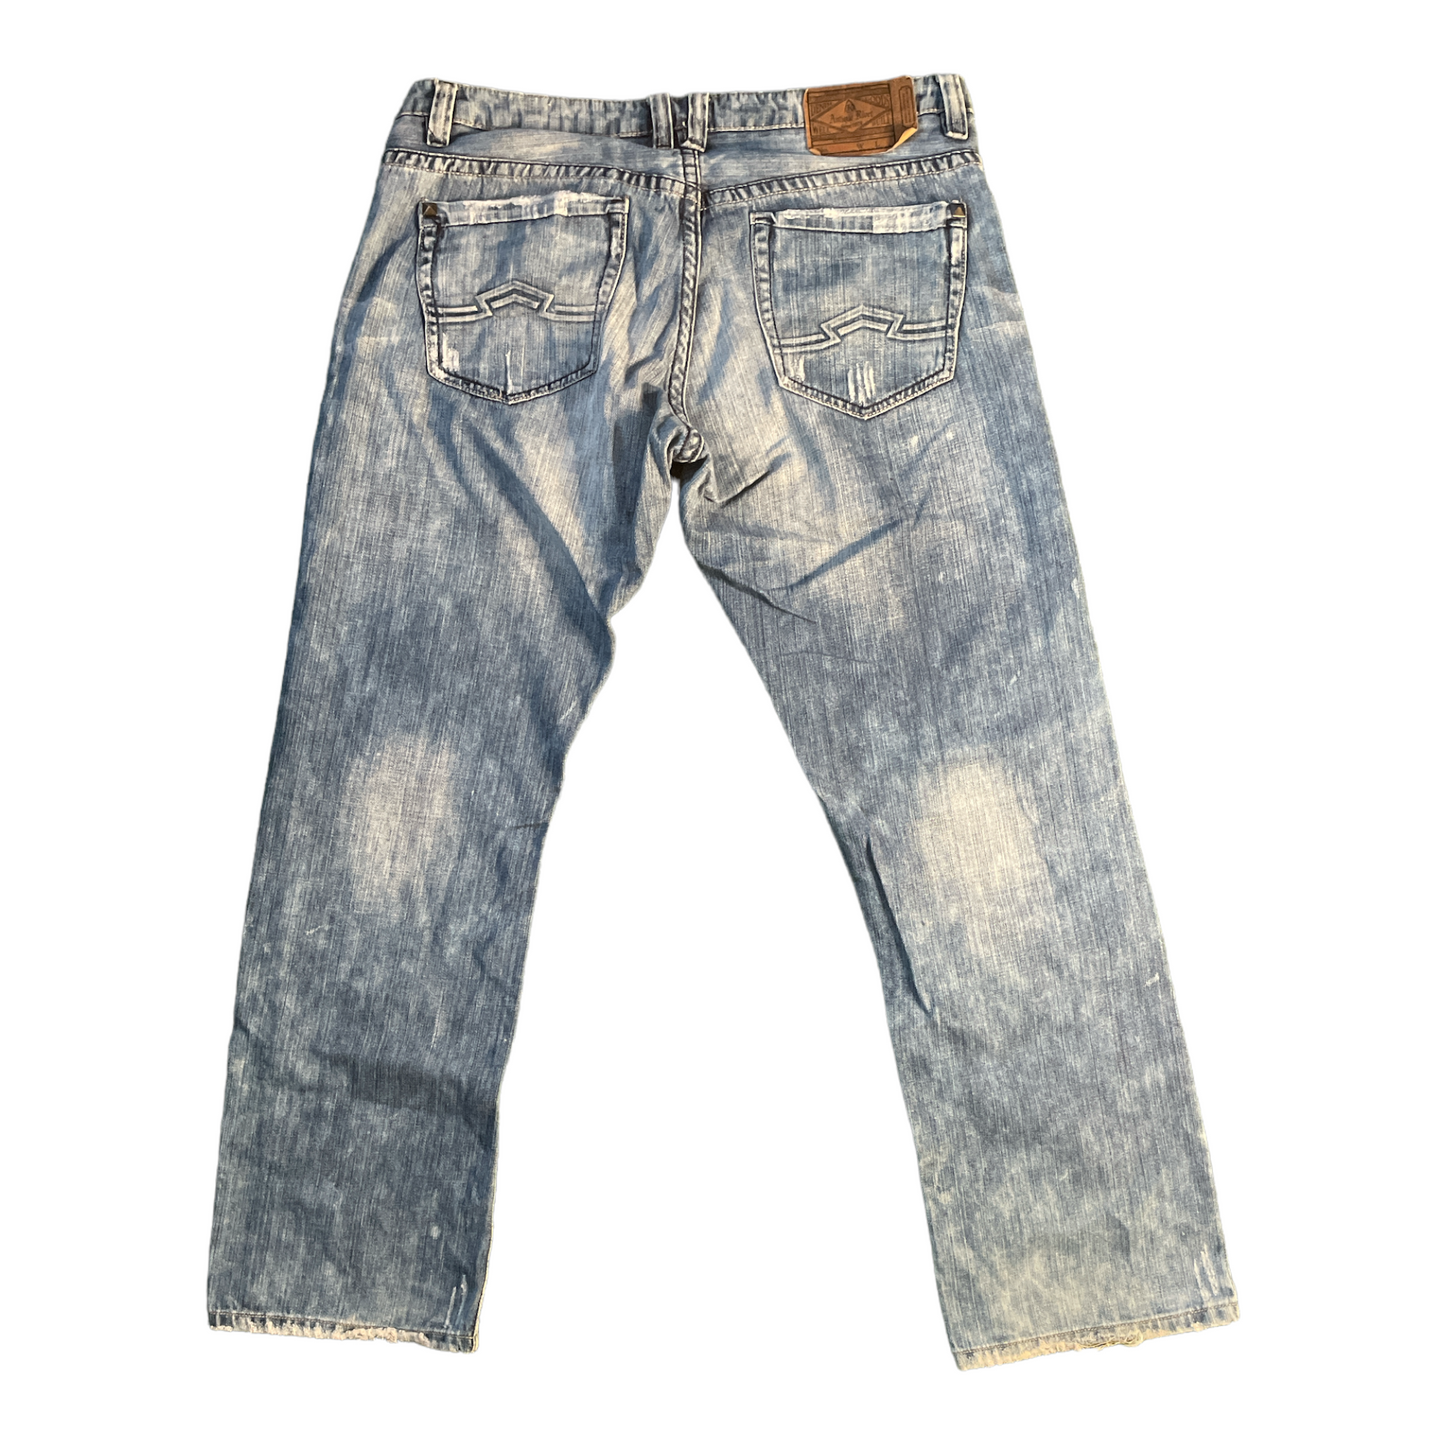 2009 Antique River Denim Jeans W 38 L 32